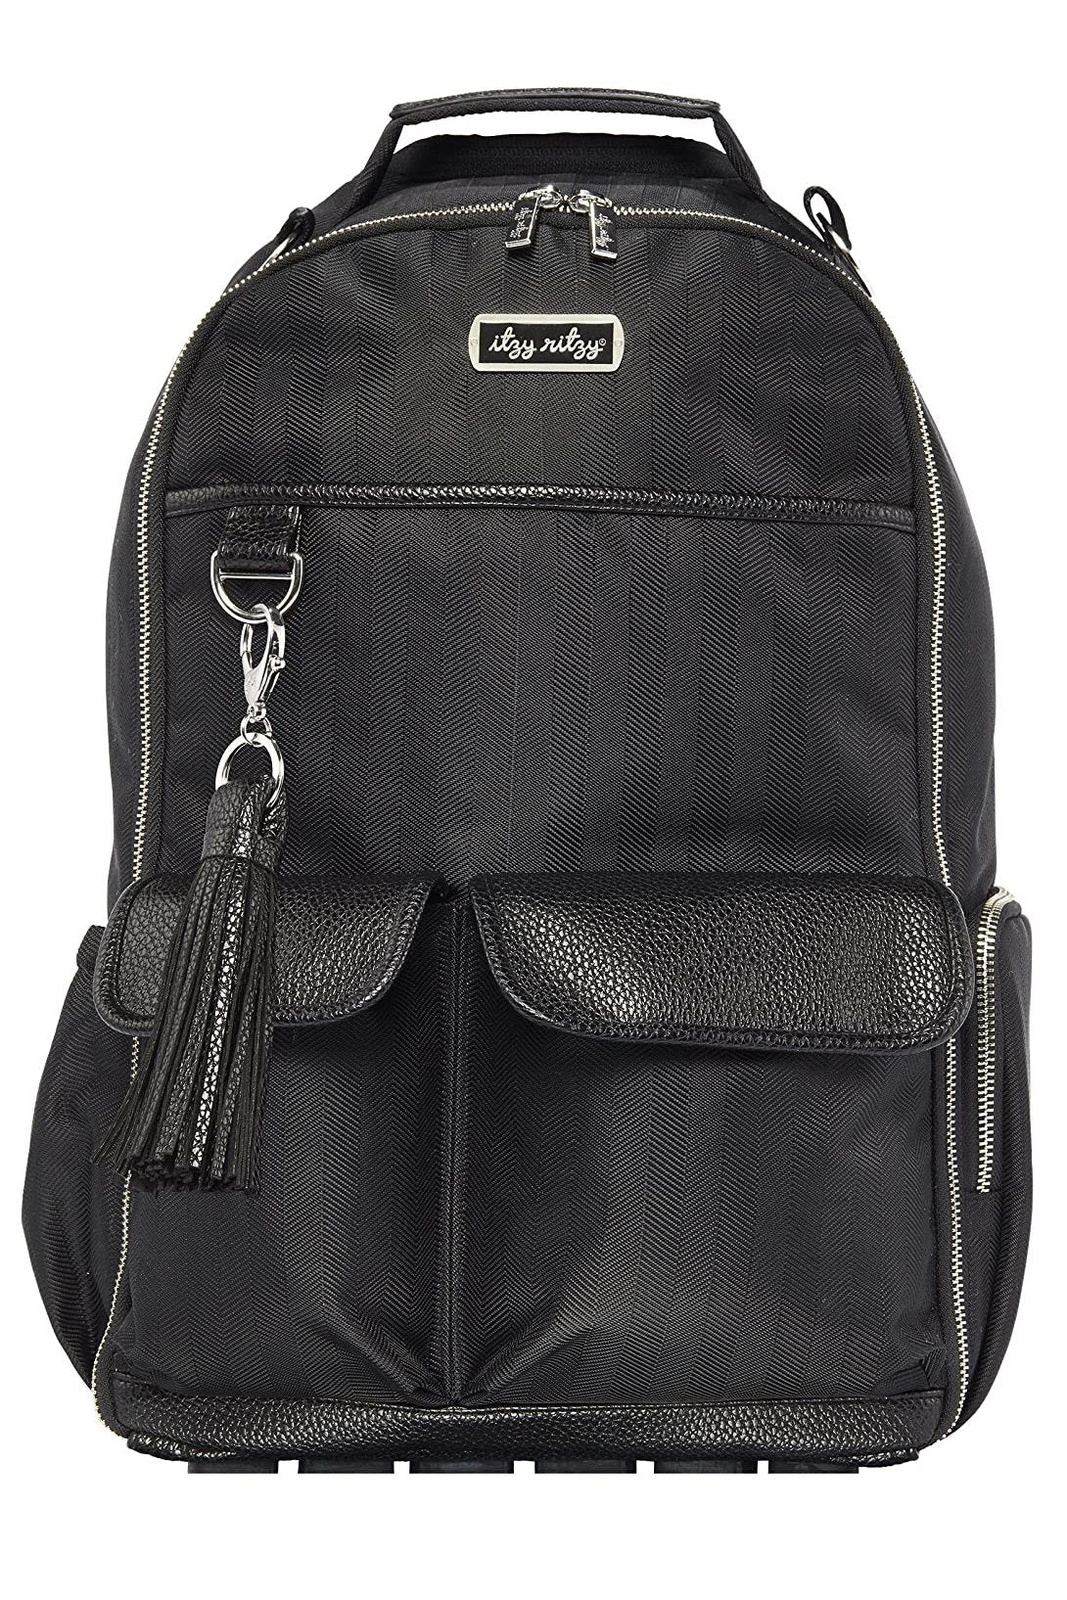 Black Herringbone Boss Backpack Diaper Bag - Tea for Three: A Children's Boutique-New Arrivals-TheT43Shop